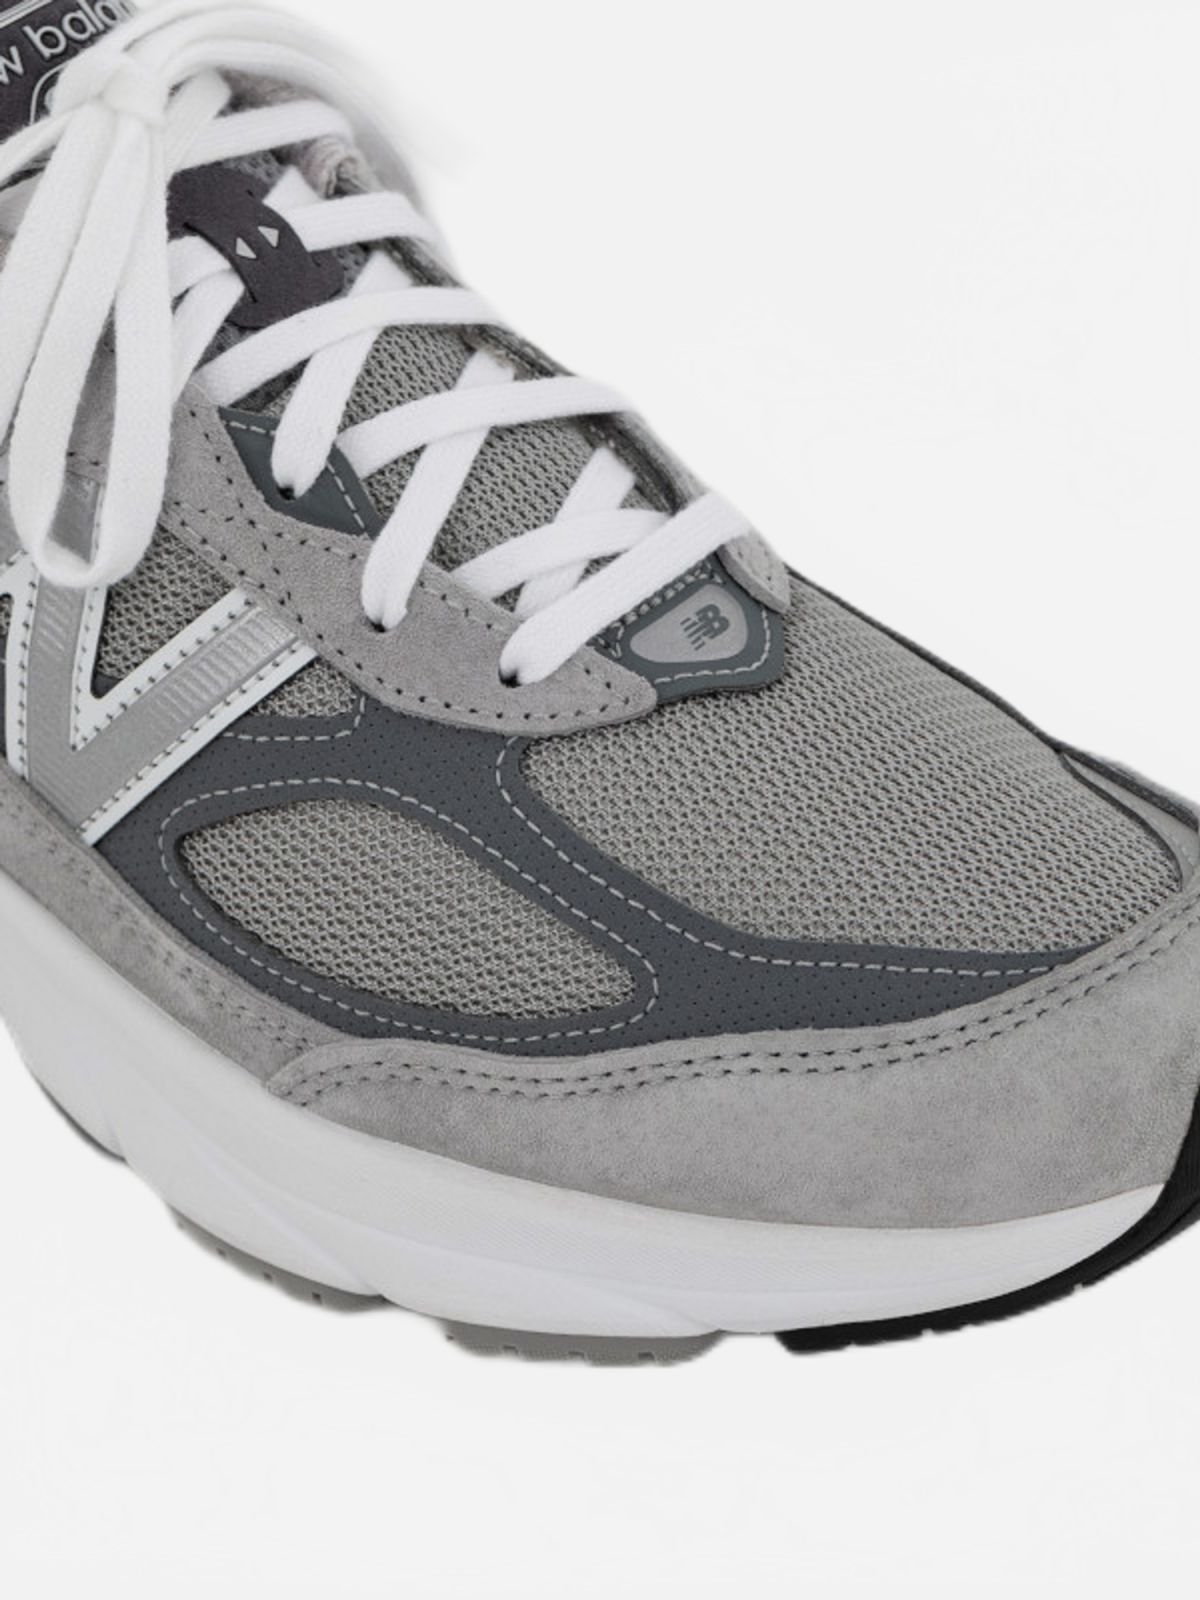  נעלי ספורט M990 רחבות / גברים של NEW BALANCE